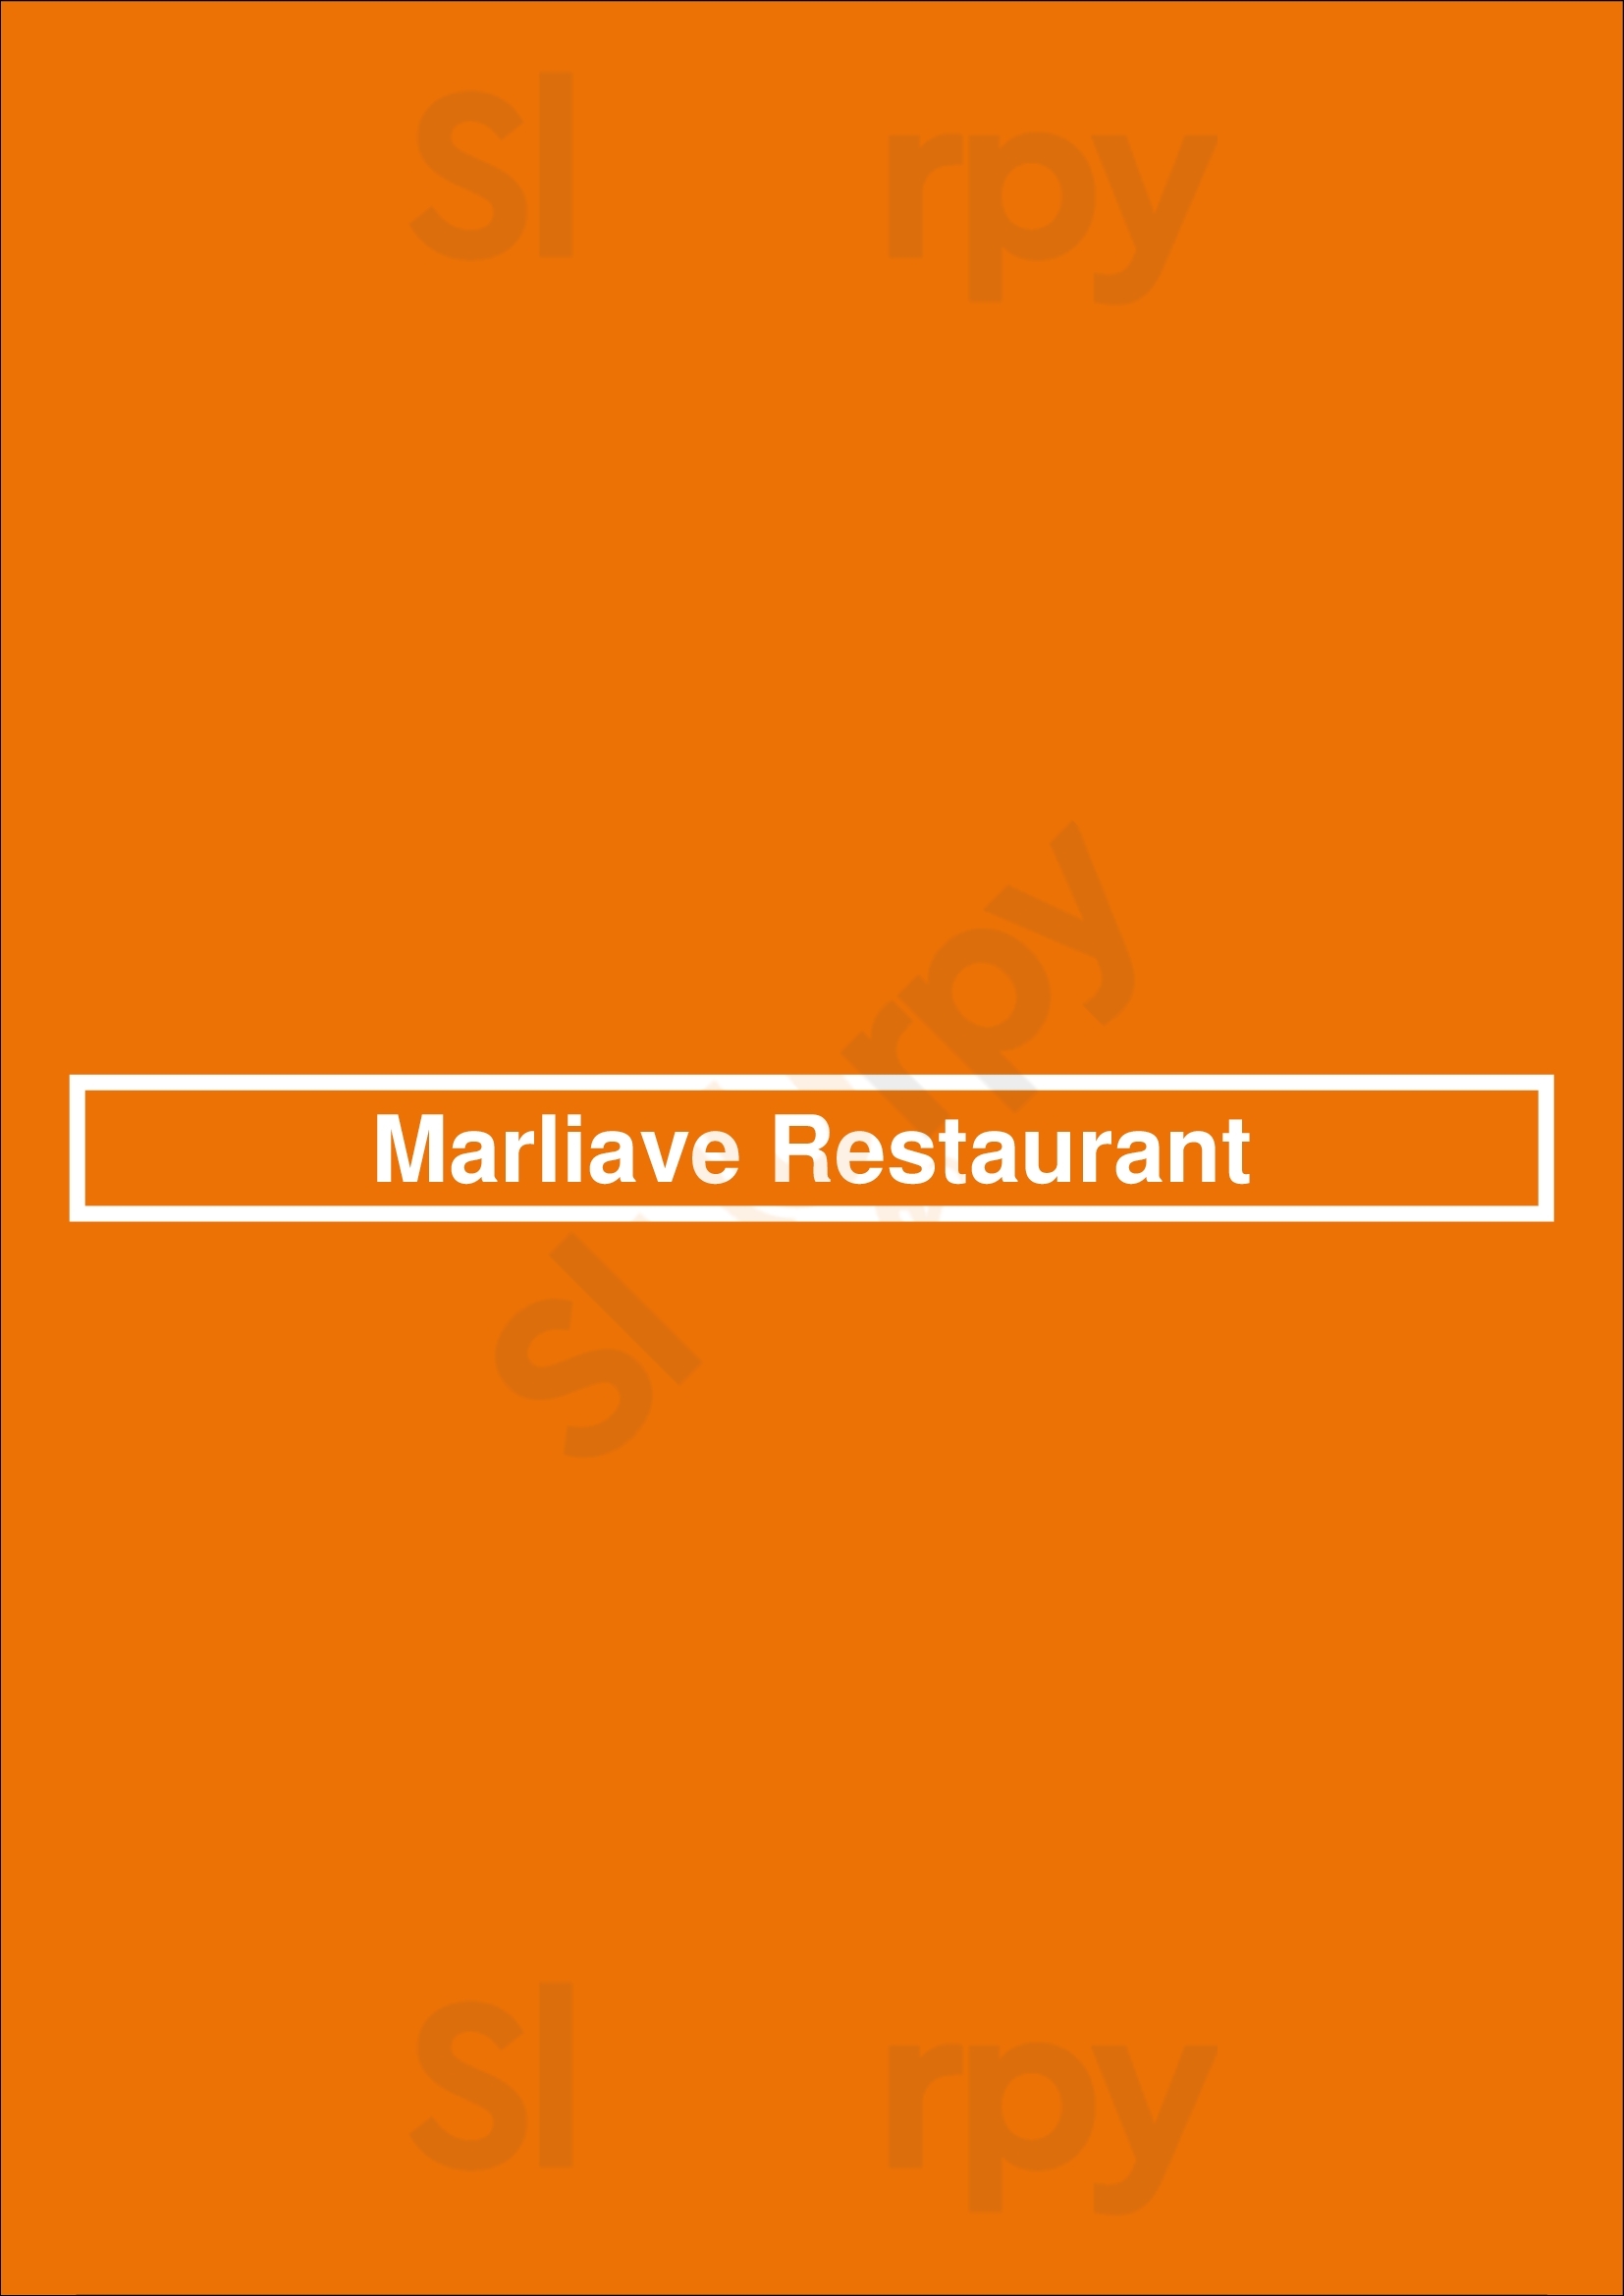 Marliave Restaurant Boston Menu - 1